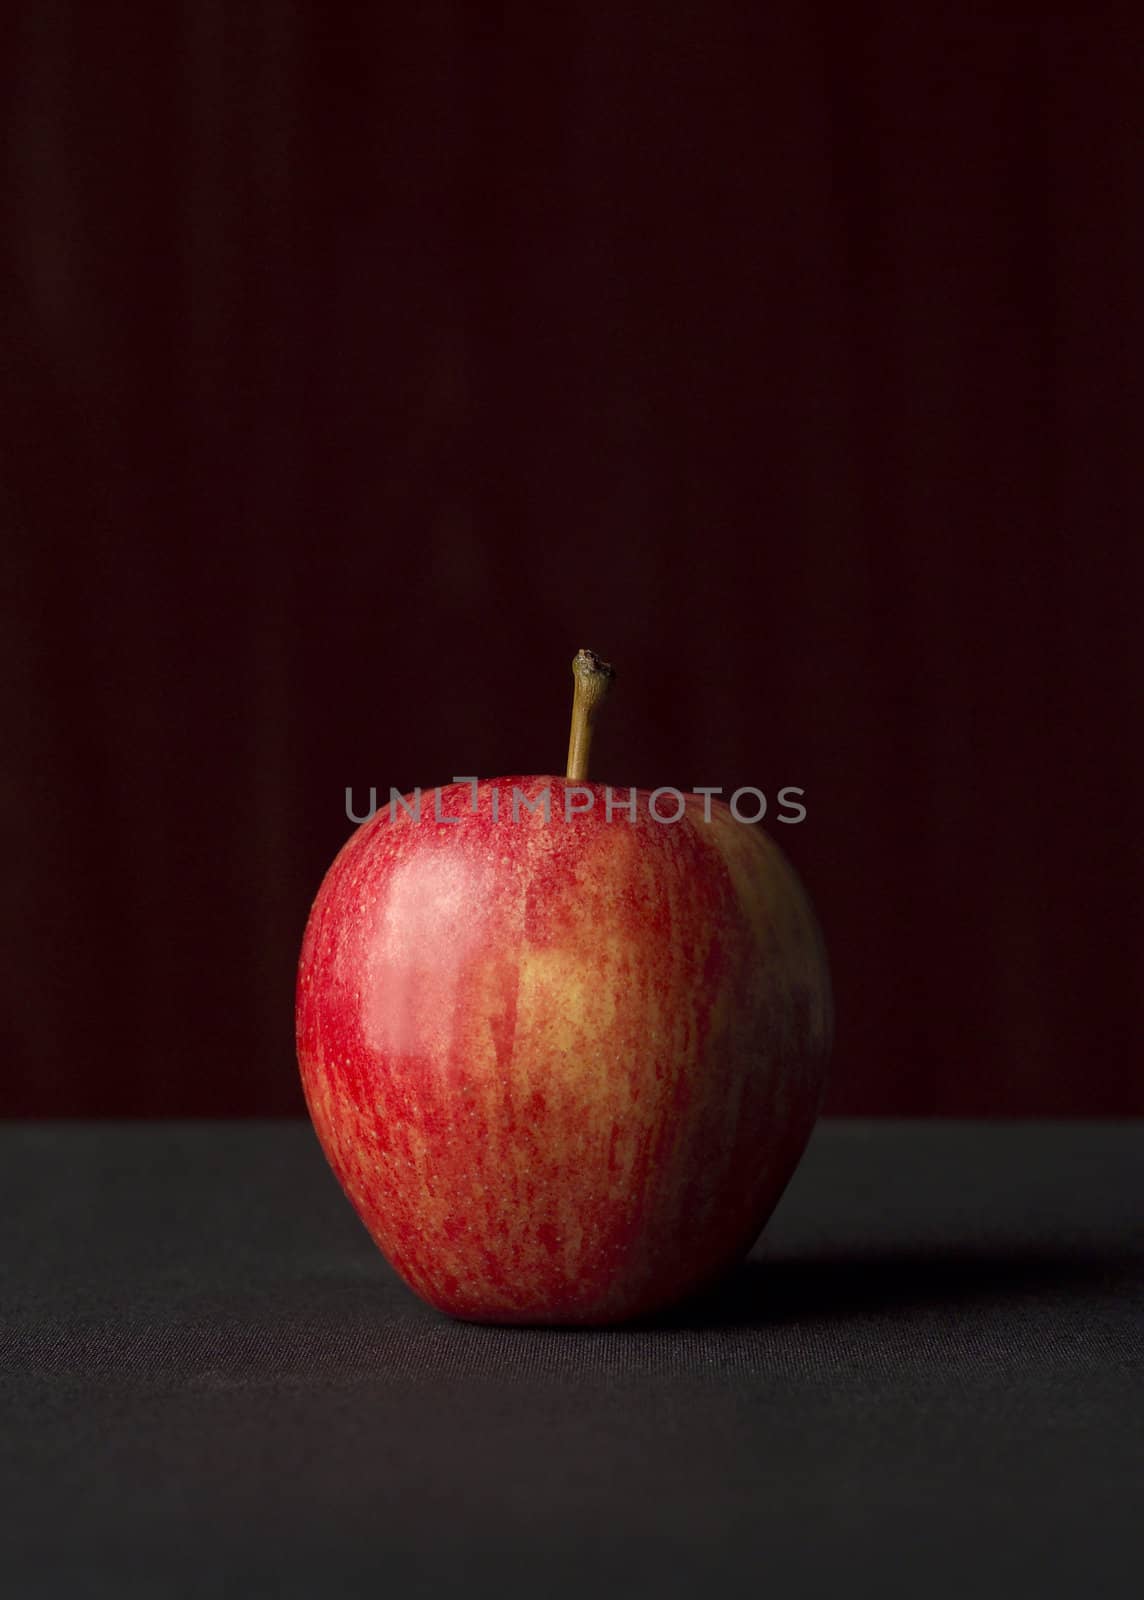 Still Life of a red apple